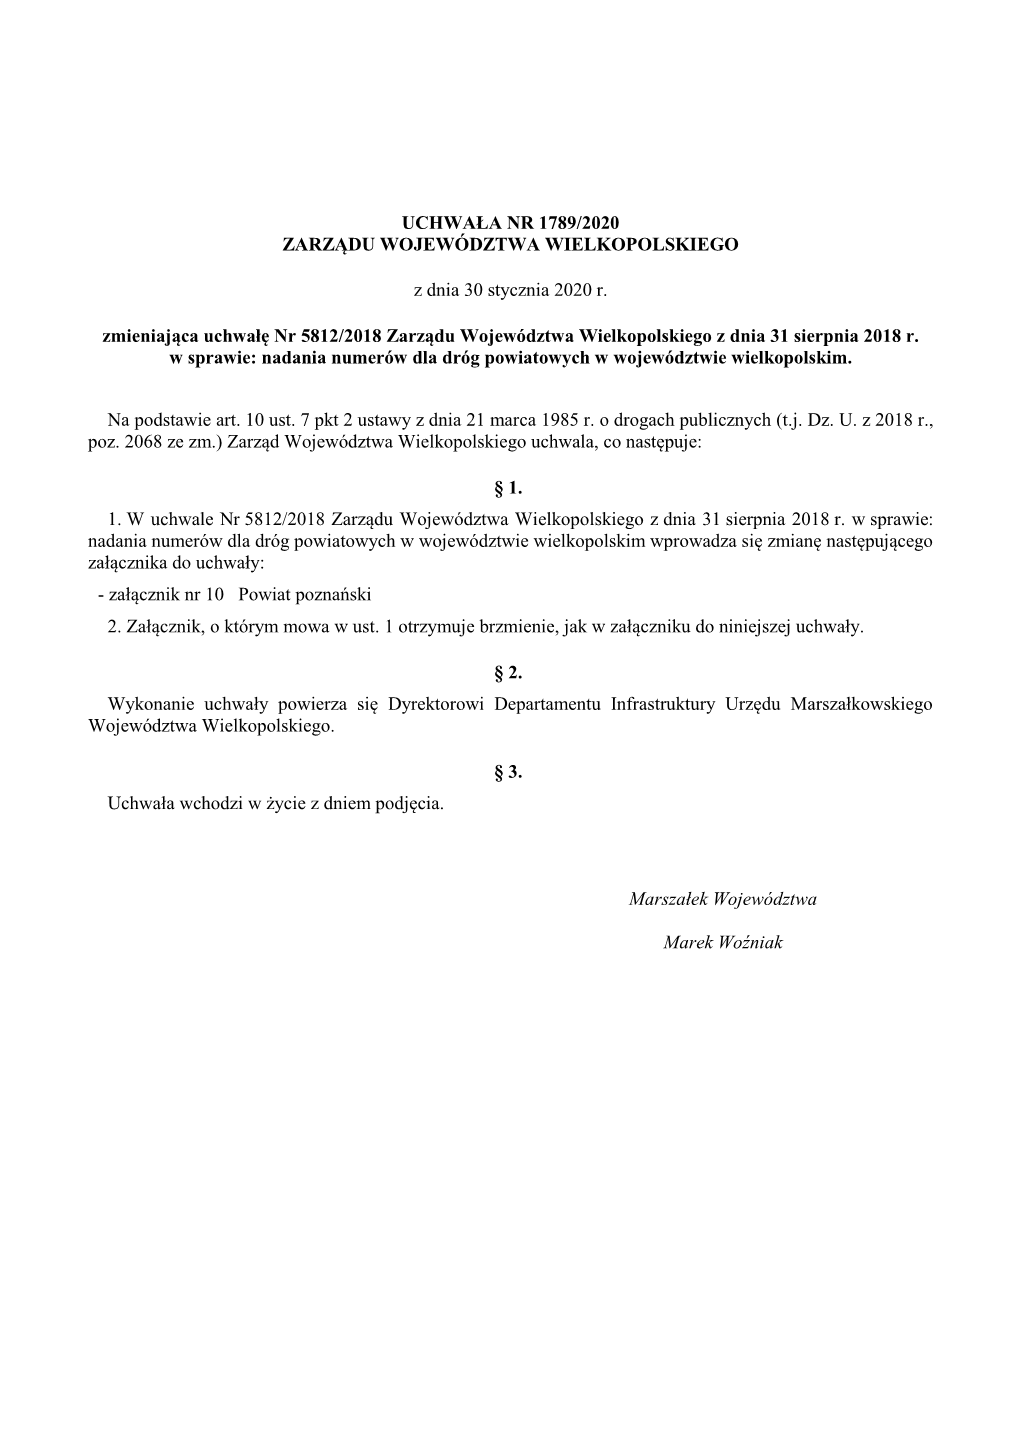 Uchwała Nr 1789/2020 Zarządu Województwa Wielkopolskiego